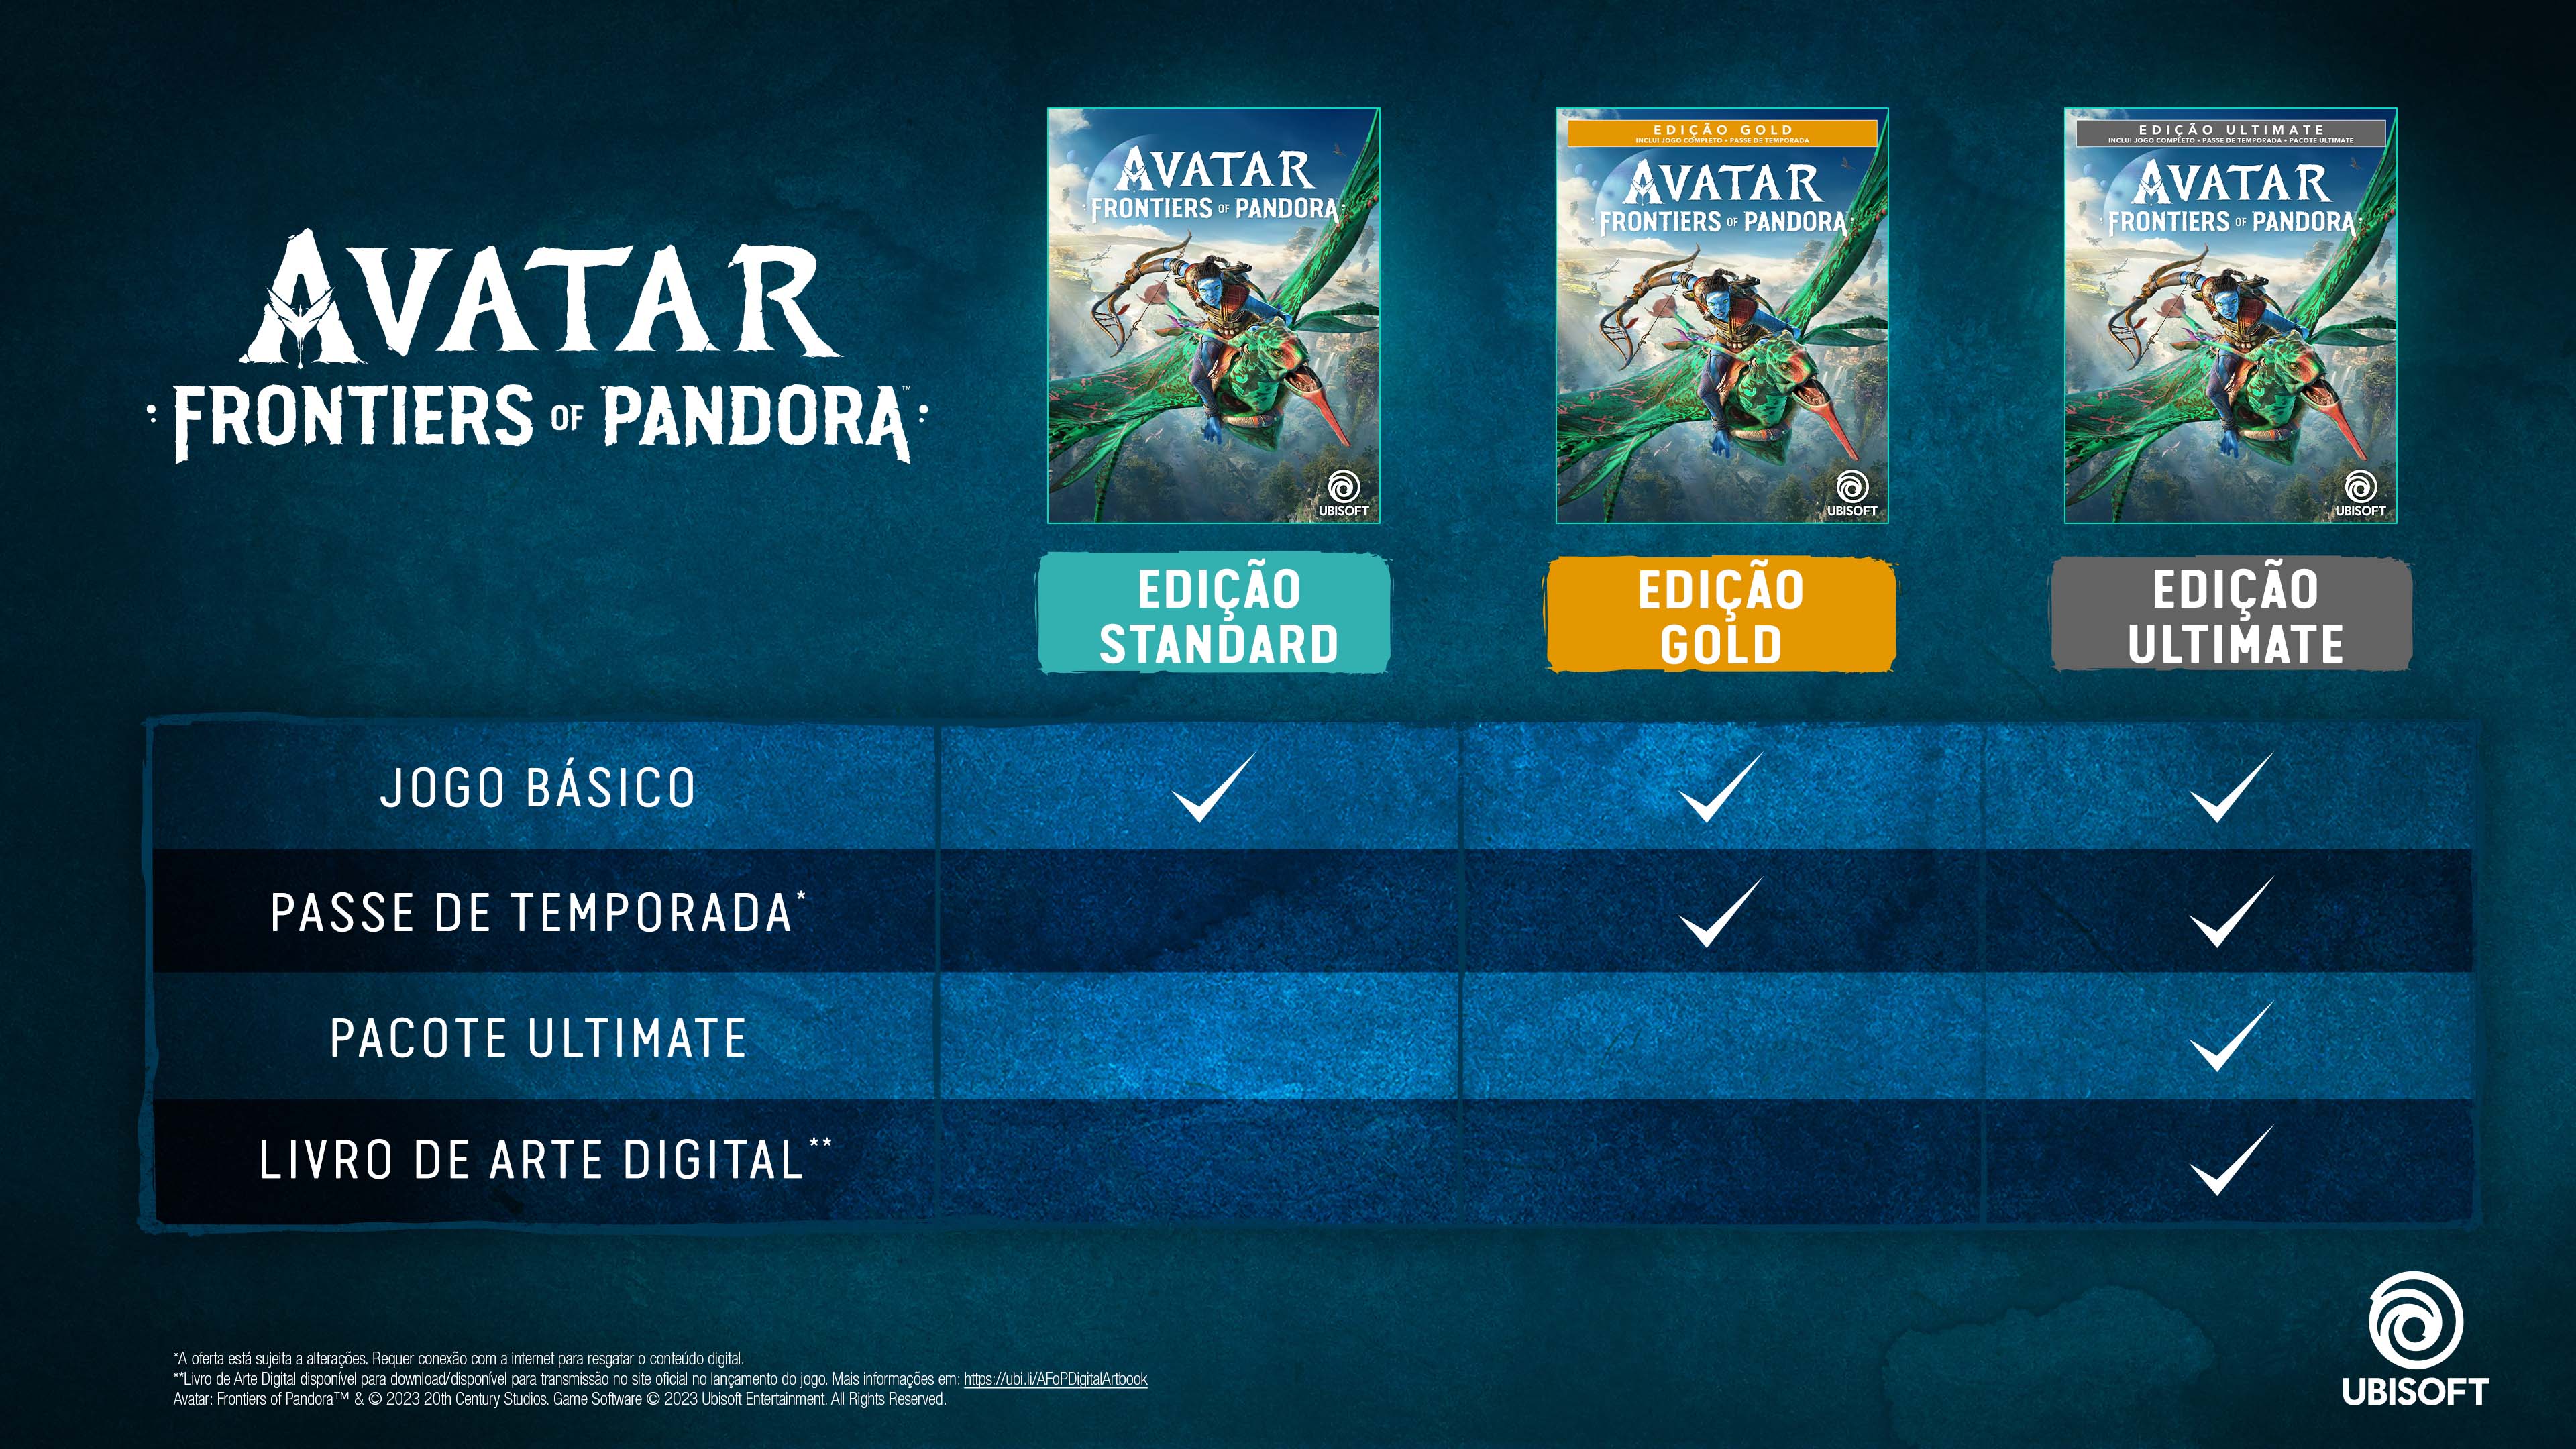 Conteúdos das edições de Avatar: Frontiers of Pandora | Ubisoft Help